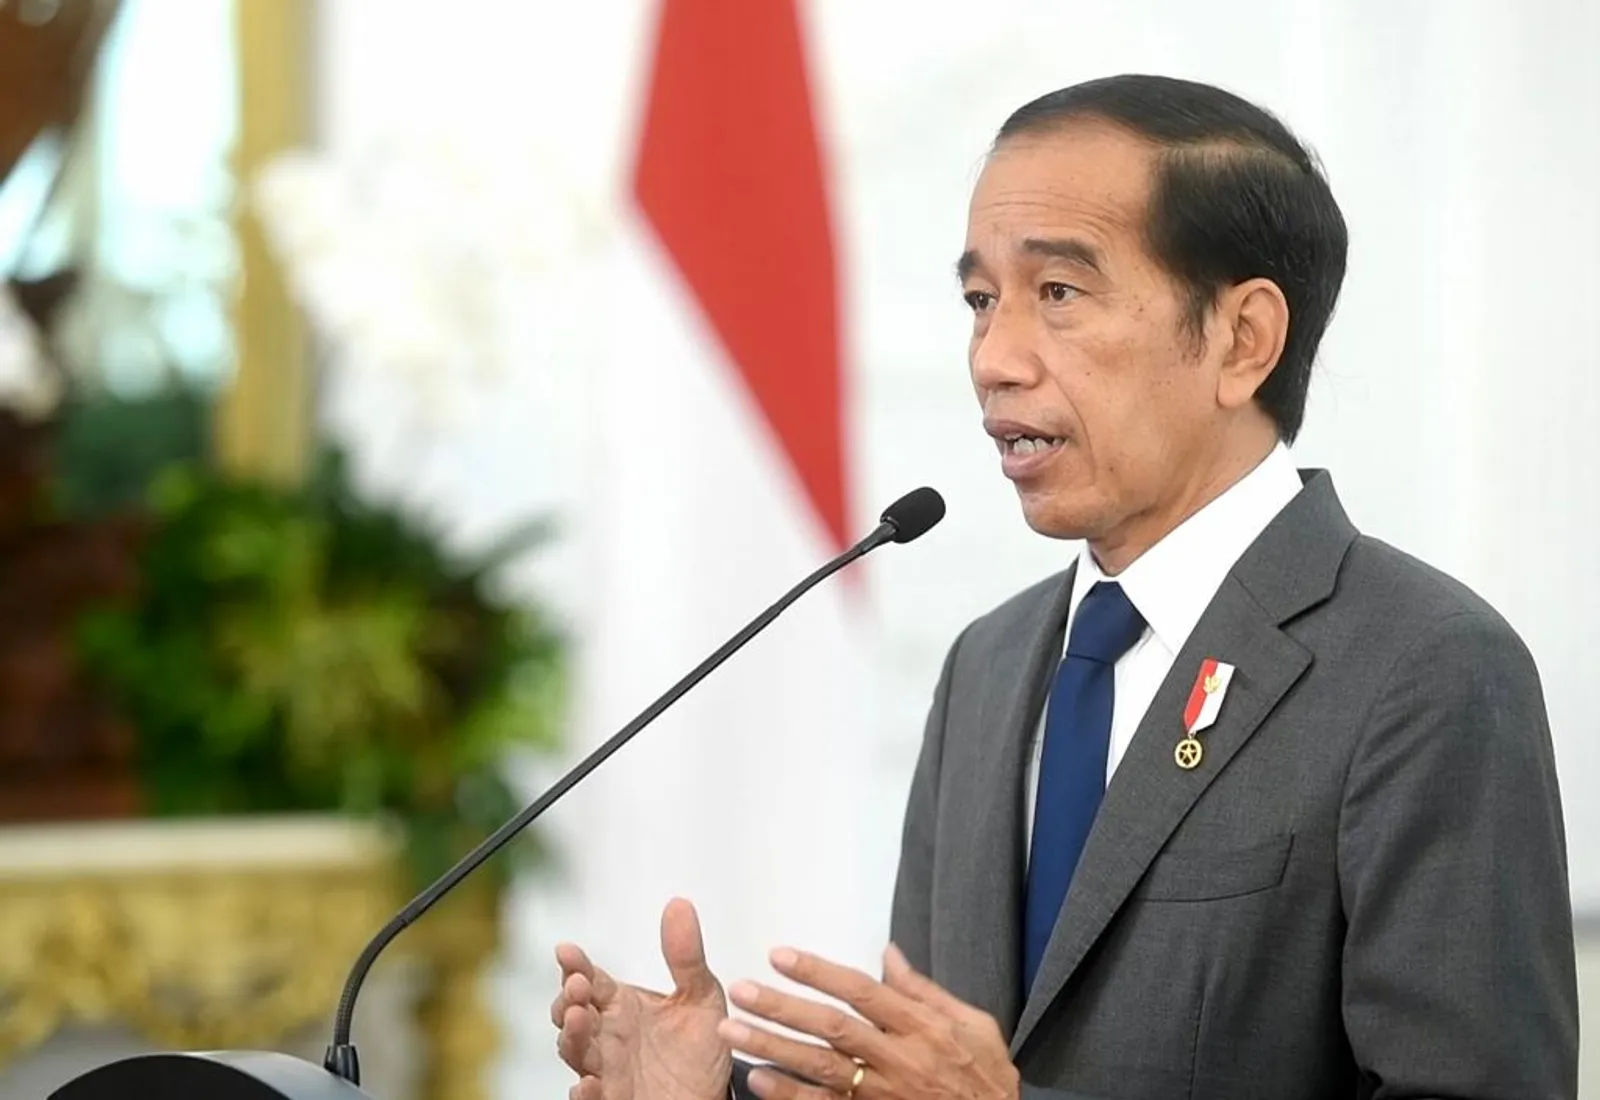 Presiden Jokowi Tutup Jual Beli di TikTok Shop, Hanya Boleh Promosi